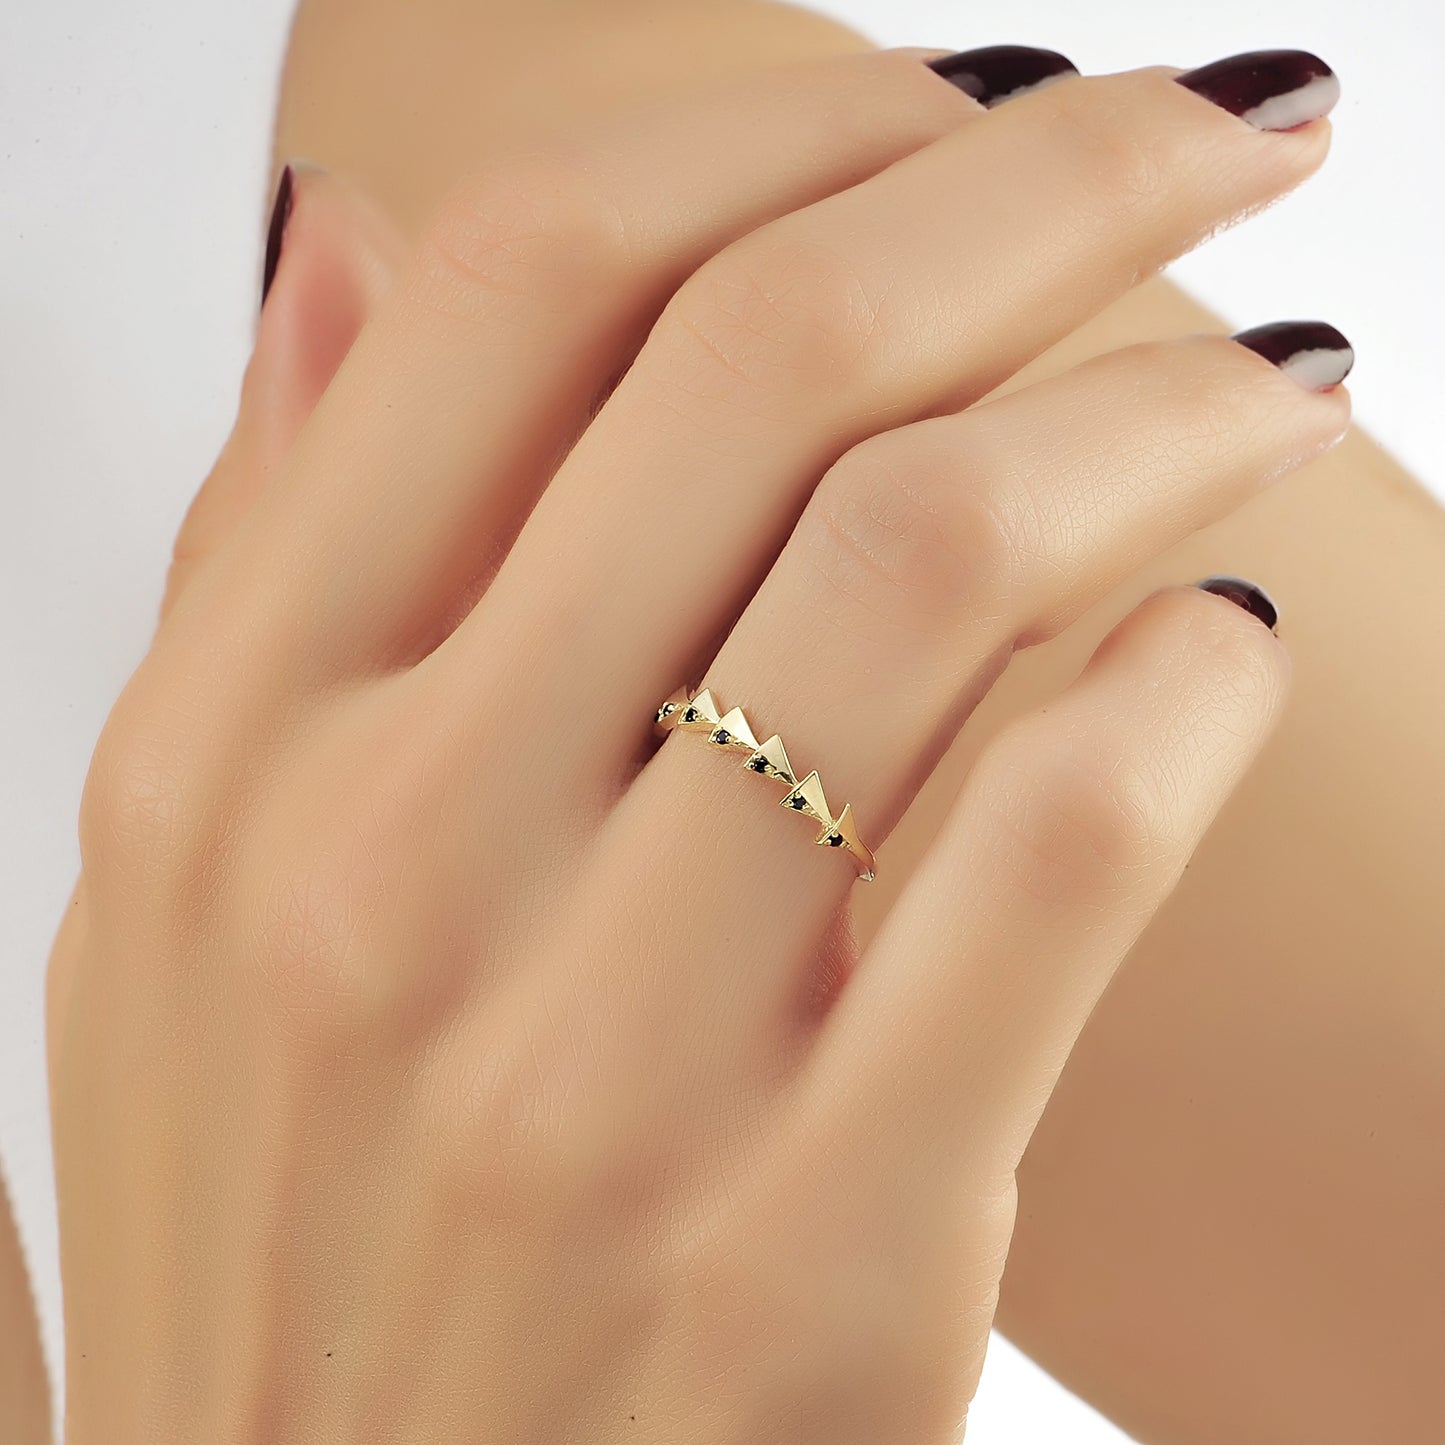 Driehoek Vormige Halve Eeuwigheid Ring, Driehoek Cluster Zwarte Diamanten Ring, Handgemaakte 14k Gouden Gebogen Golvende Ring